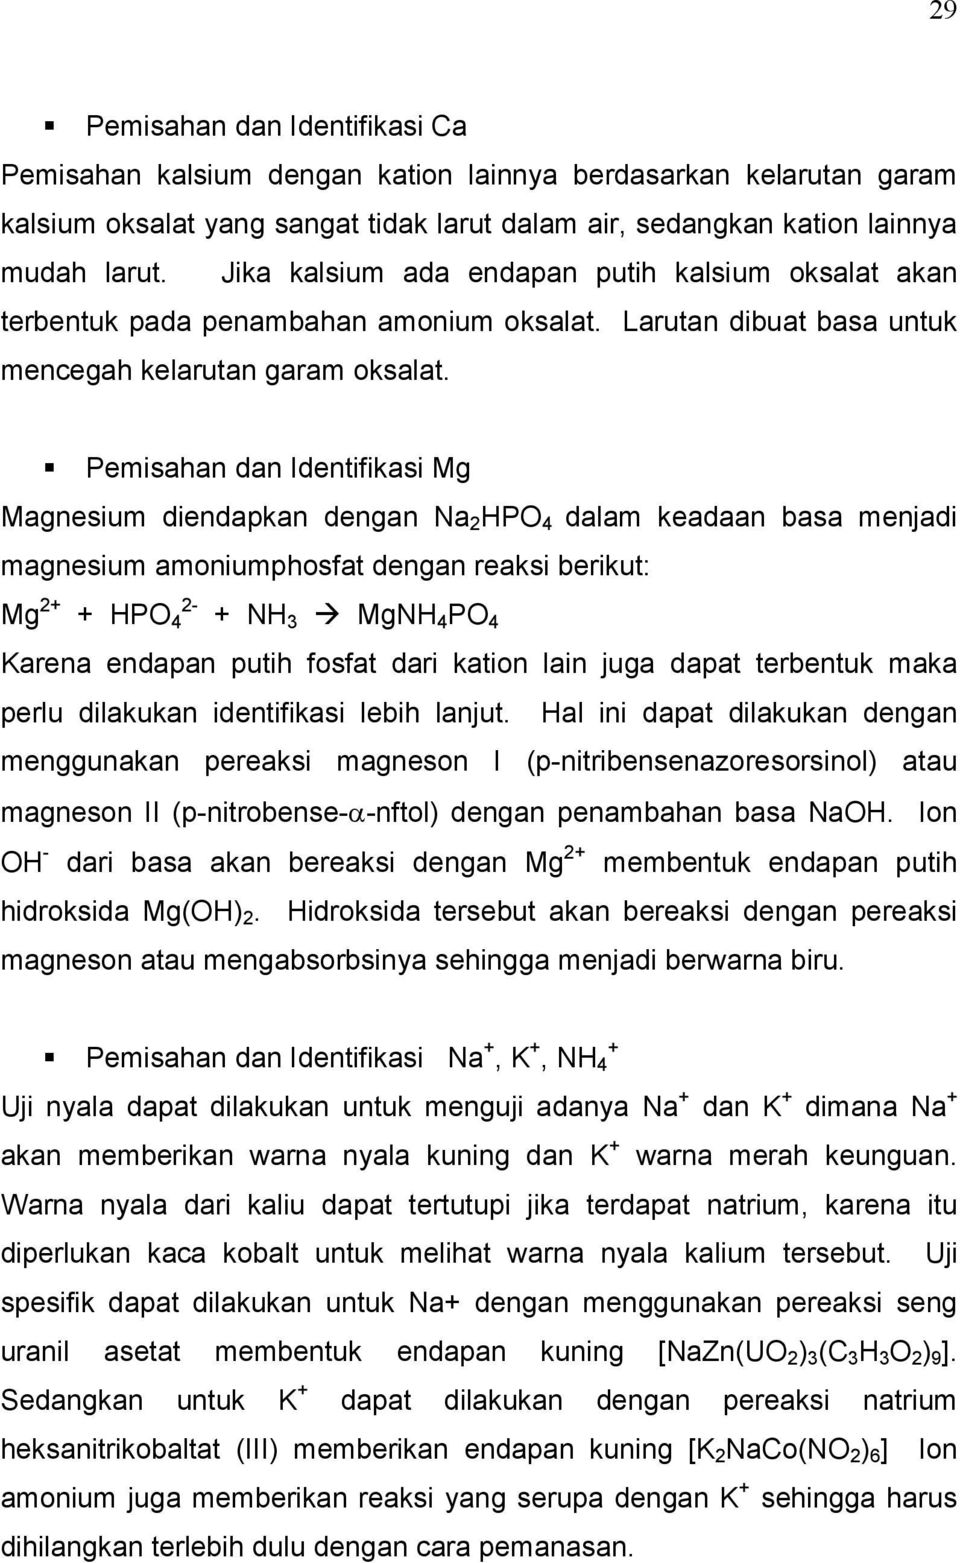 Pemisahan dan Identifikasi Mg Magnesium diendapkan dengan Na 2 HPO 4 dalam keadaan basa menjadi magnesium amoniumphosfat dengan reaksi berikut: Mg 2+ + HPO 4 + NH 3 MgNH 4 PO 4 Karena endapan putih